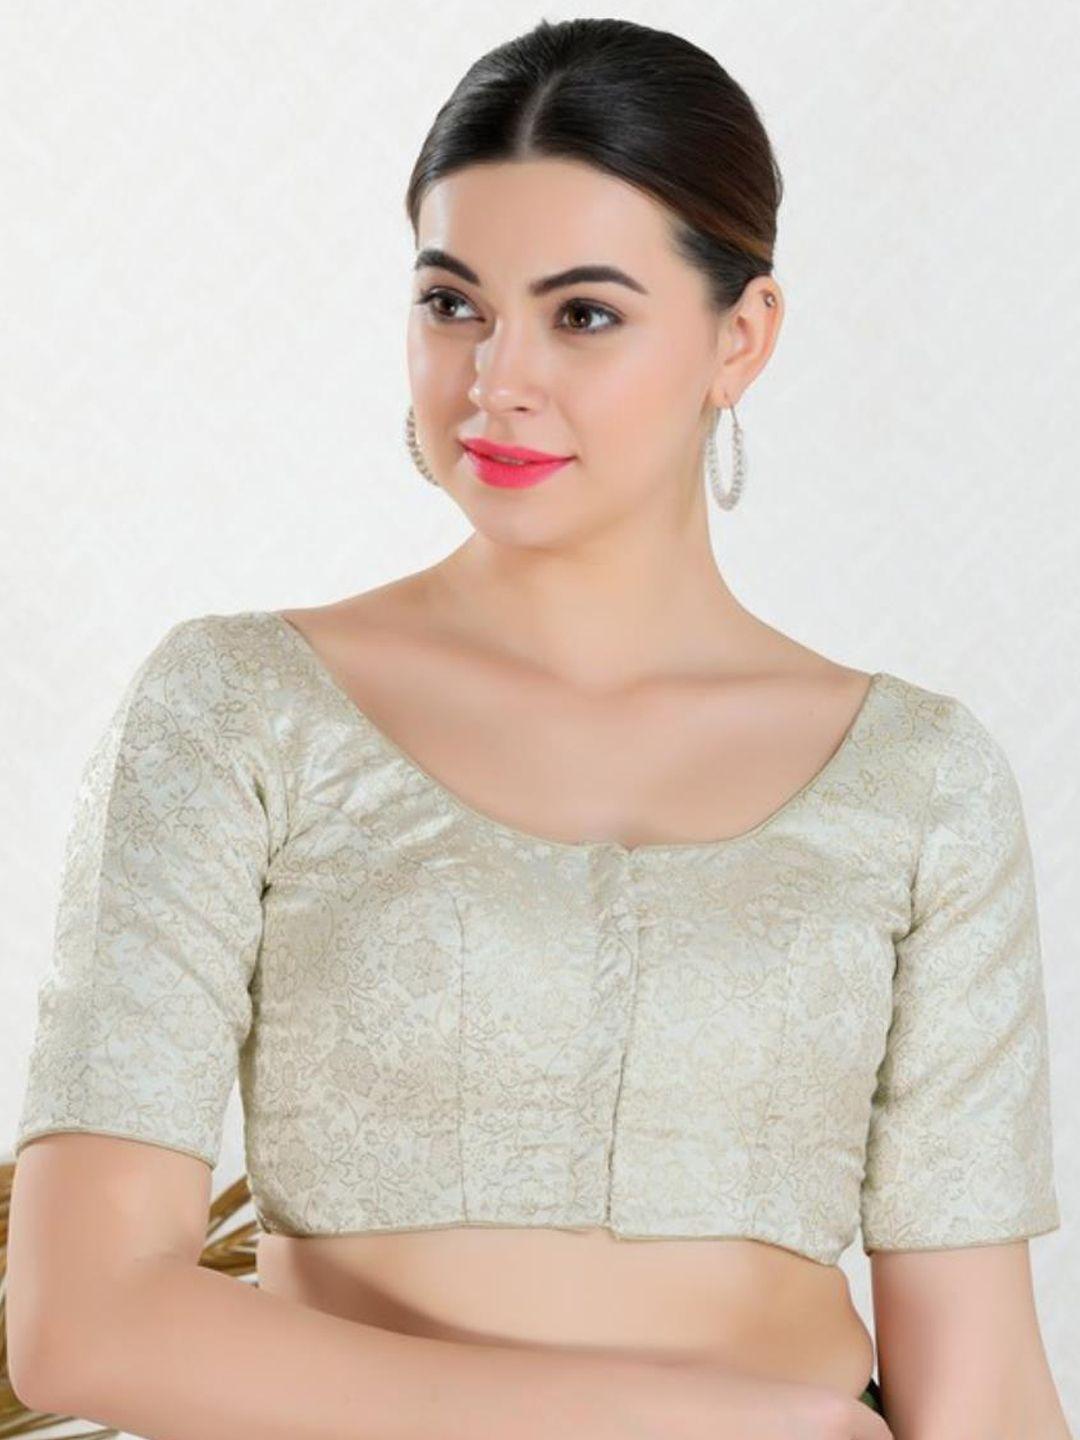 salwar studio woven design jacquard readymade saree blouse